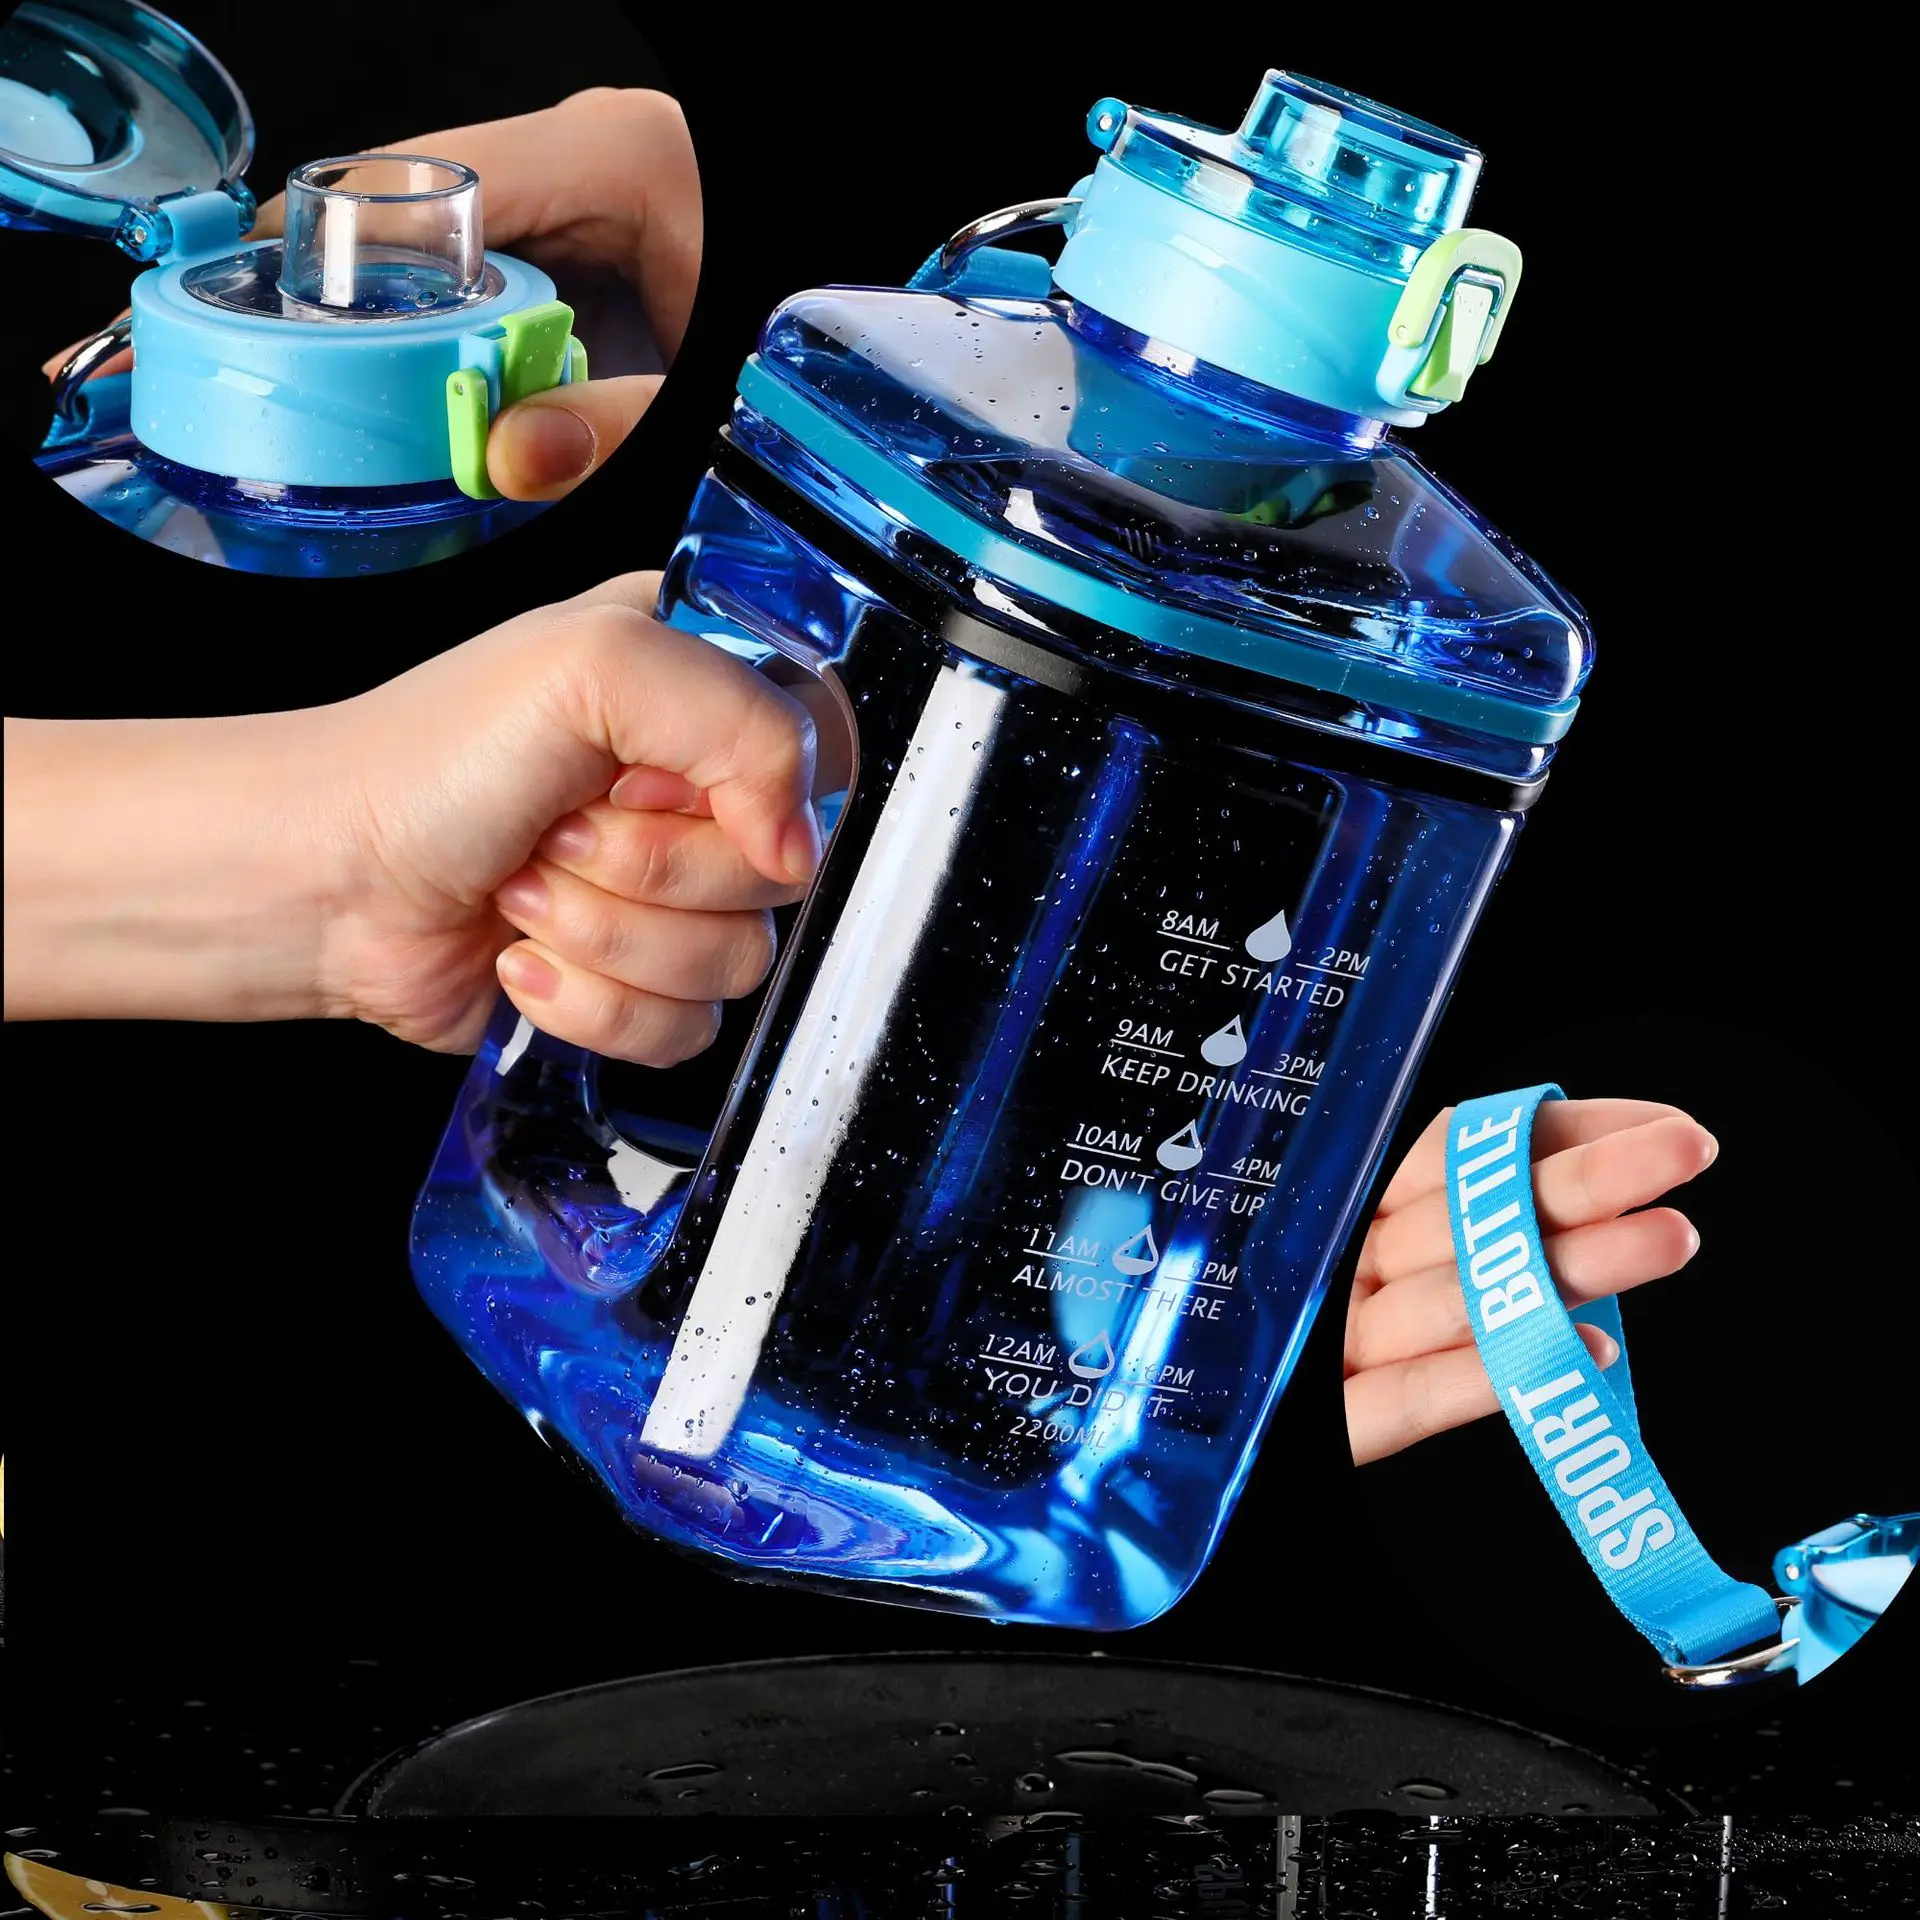 

2.2L вместительная мотивирующая бутылка для воды, портативная пластиковая бутылка для воды для спортзала, занятий спортом на открытом воздухе, кувшин, бутылки для воды с маркером времени